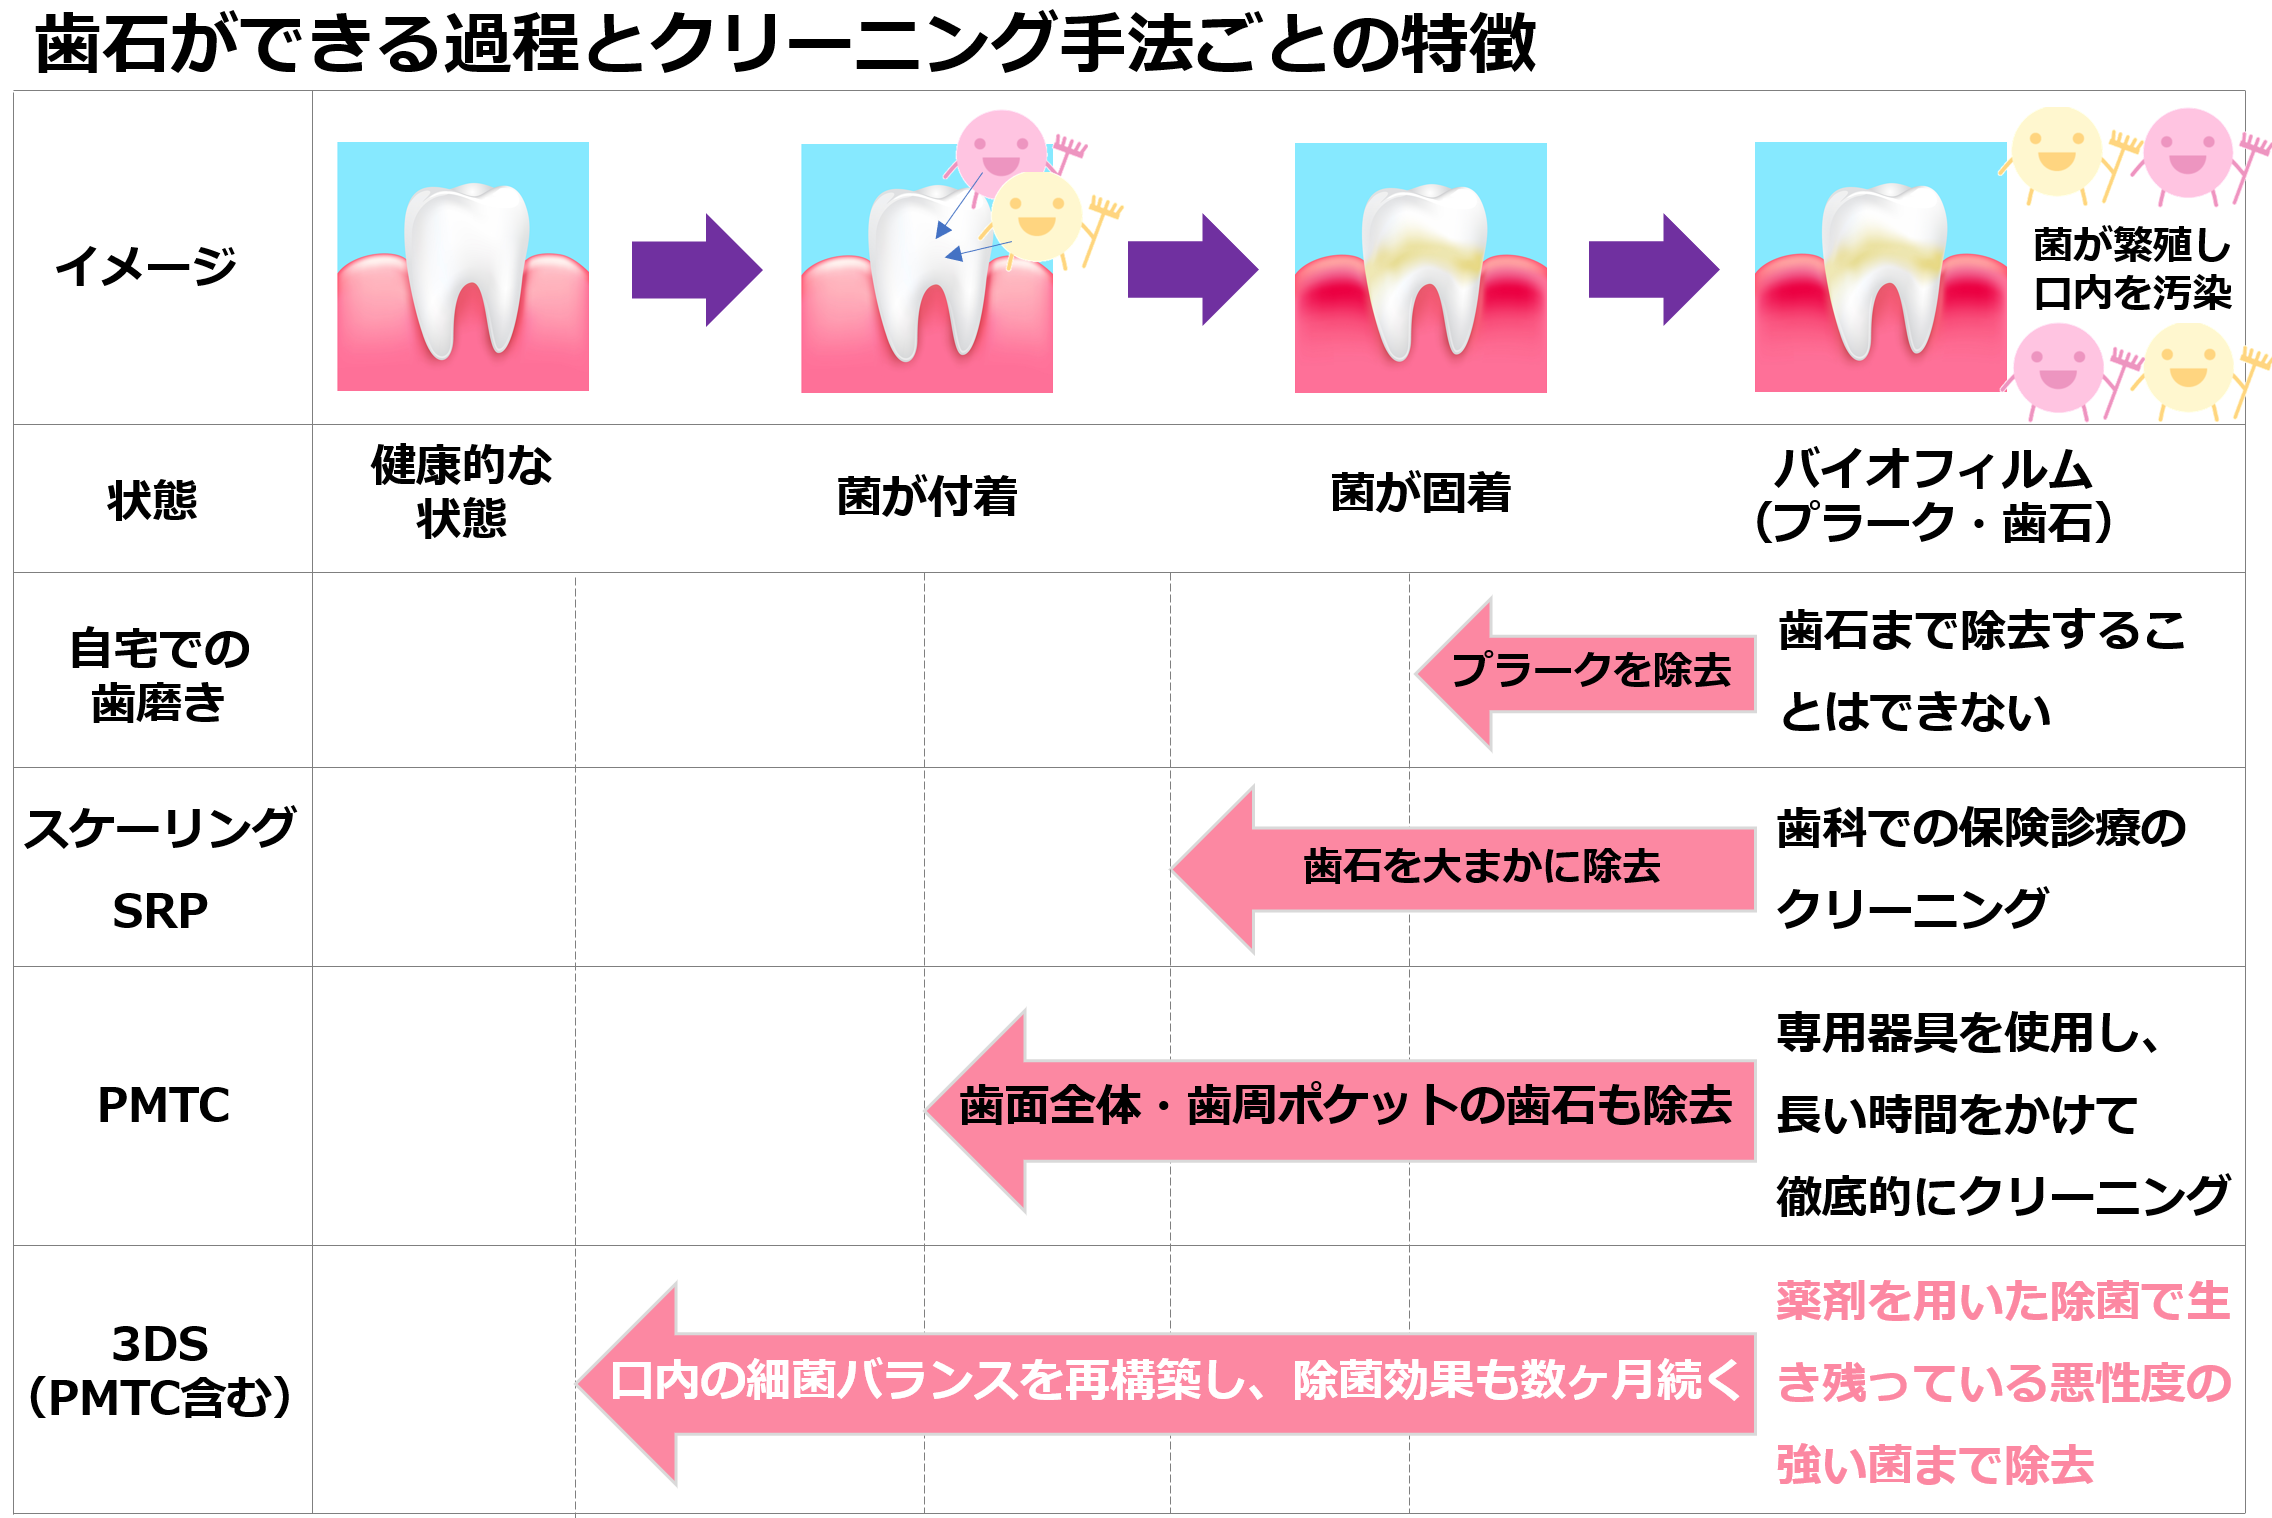 歯の状態：健康的な状態、歯周病菌が付着、歯周病菌が固着（歯垢・プラーク）、歯石の形成・歯周病の進行。自宅での歯磨き：食べかすを除去。プラークを除去することはできない。スケーリング・SRP：歯ぐき周辺の歯石を大まかに除去。歯科での保険診療のクリーニング。PMTC ：歯の全面・歯周ポケットの歯石まで除去。専用器具を使用し、長い時間をかけて徹底クリーニング。PMTC＋3DS：口腔内の細菌バランスを再構築し、除菌効果も数ヶ月続く。薬剤を用いた除菌で生き残っている悪性度の強い菌まで除去